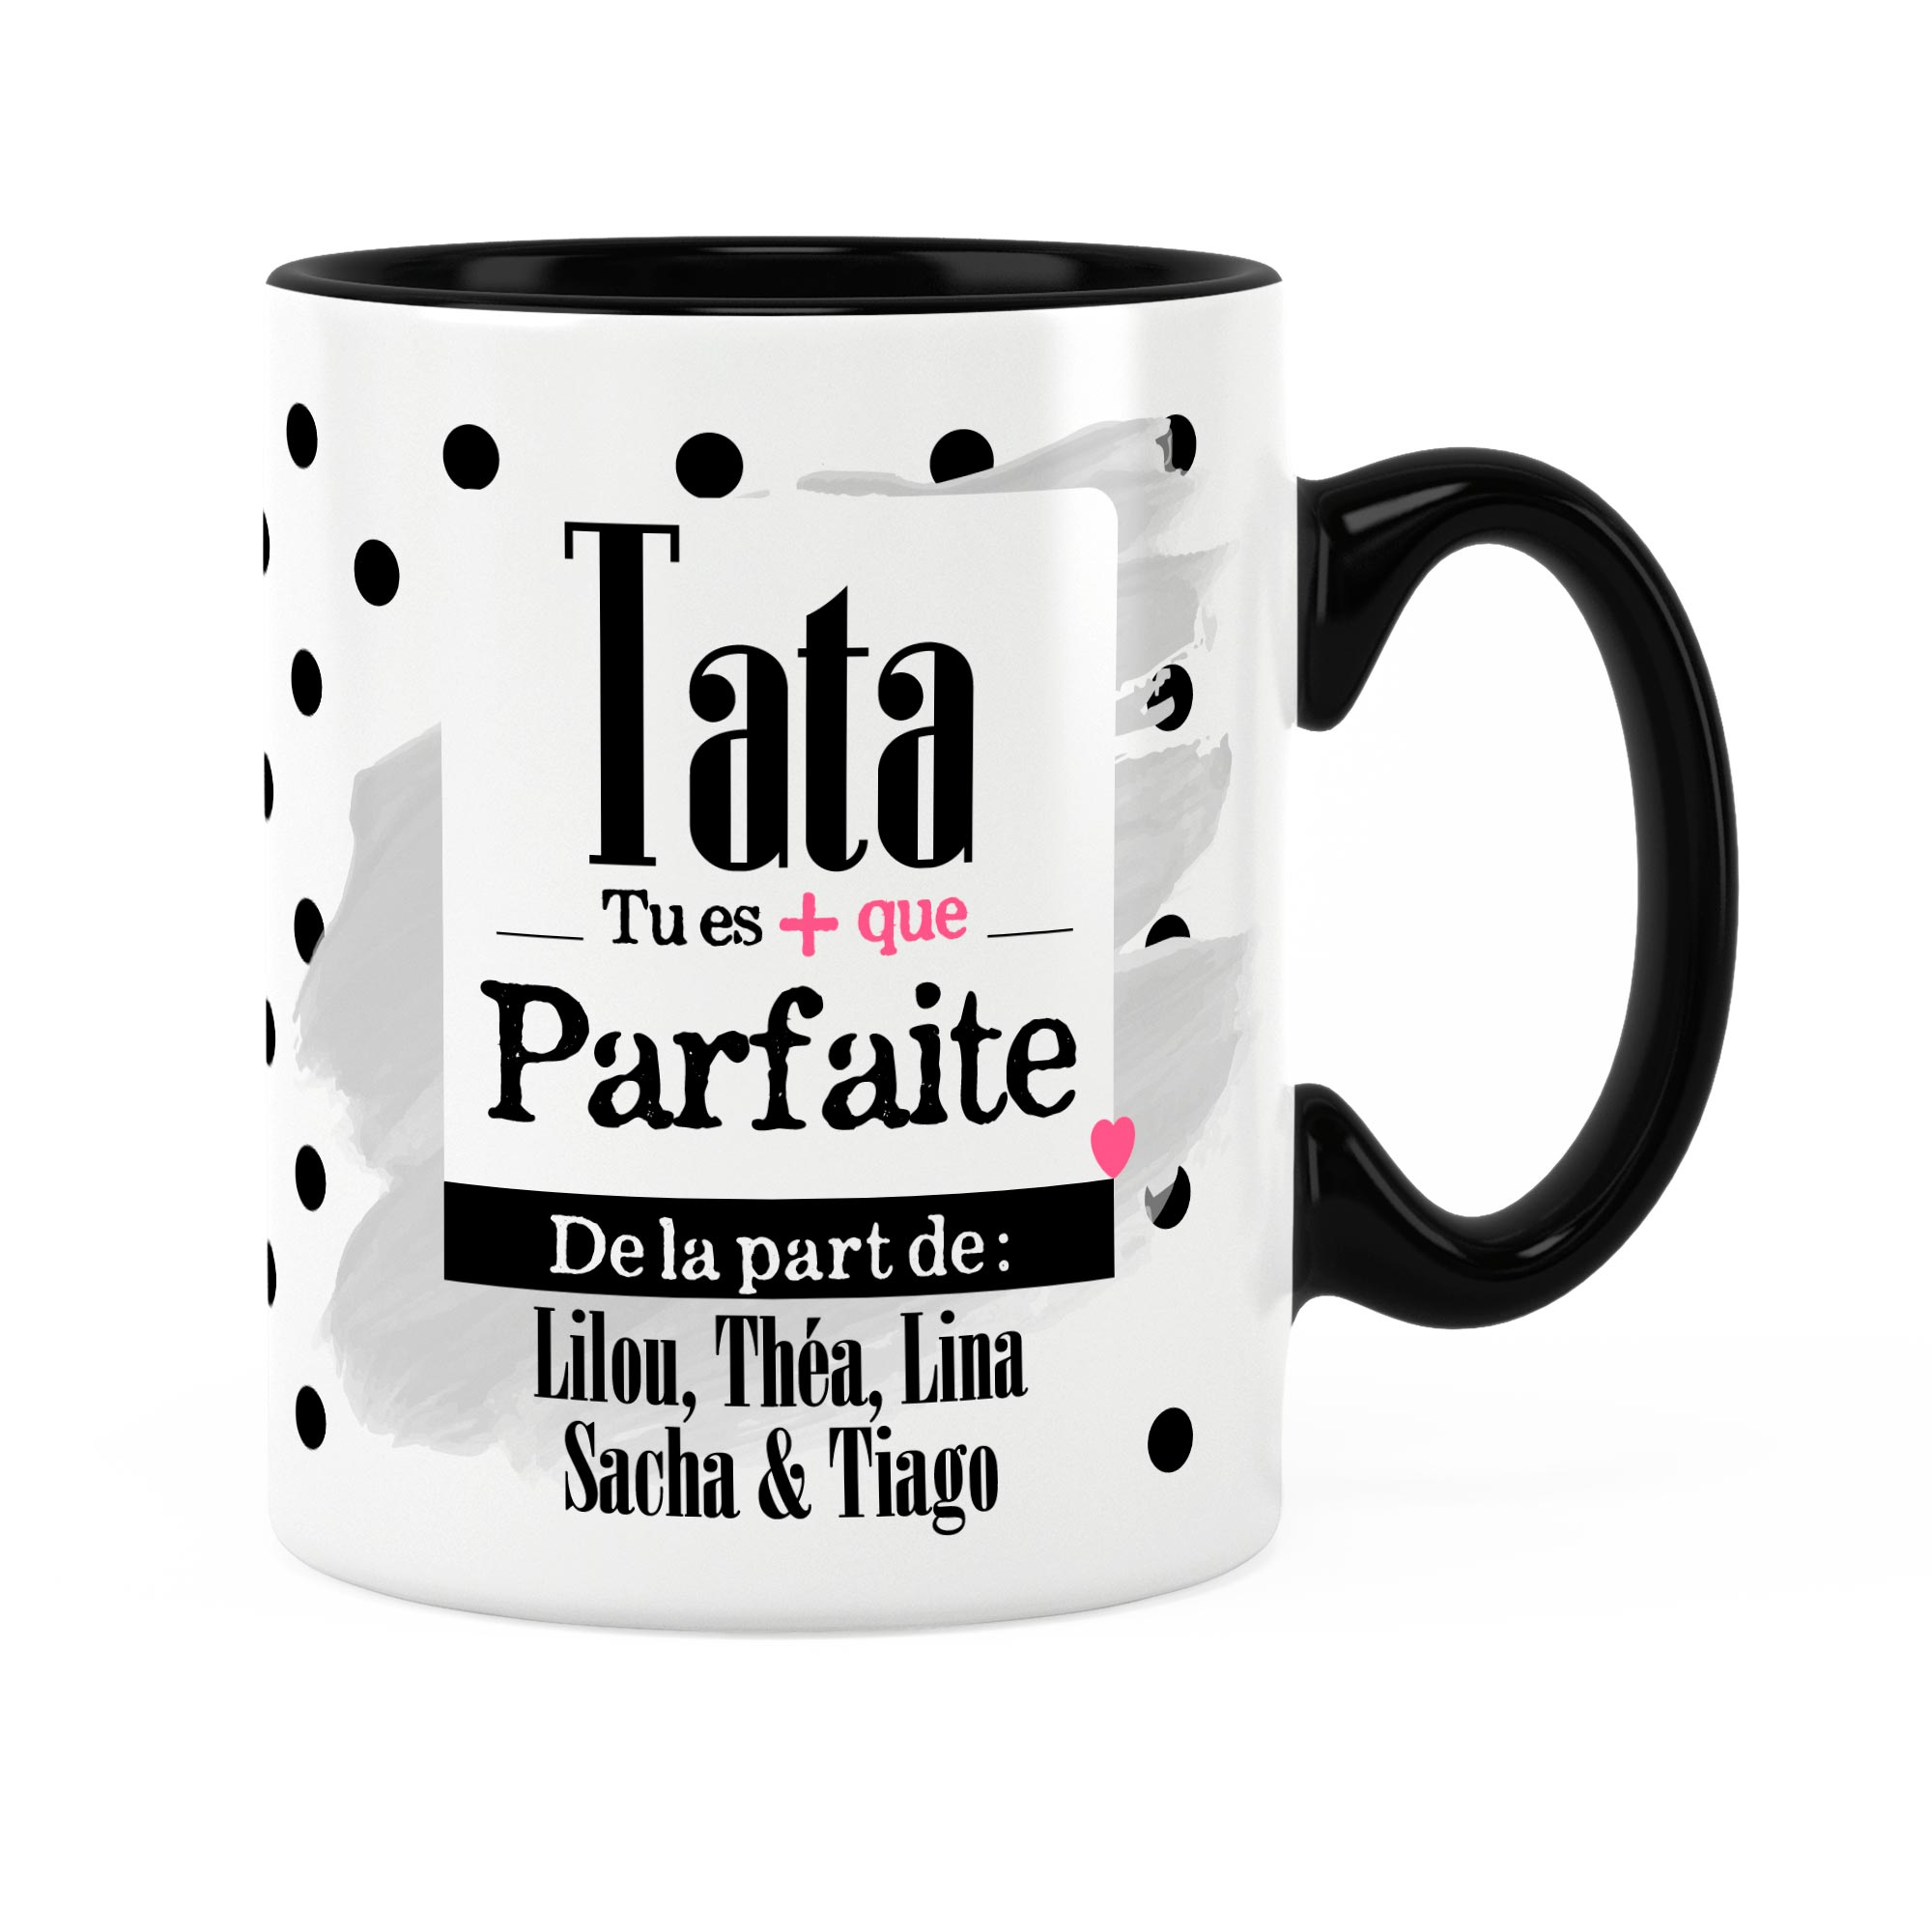 Cadeau pour Tata pas cher - Mug Tata Cool rigolo